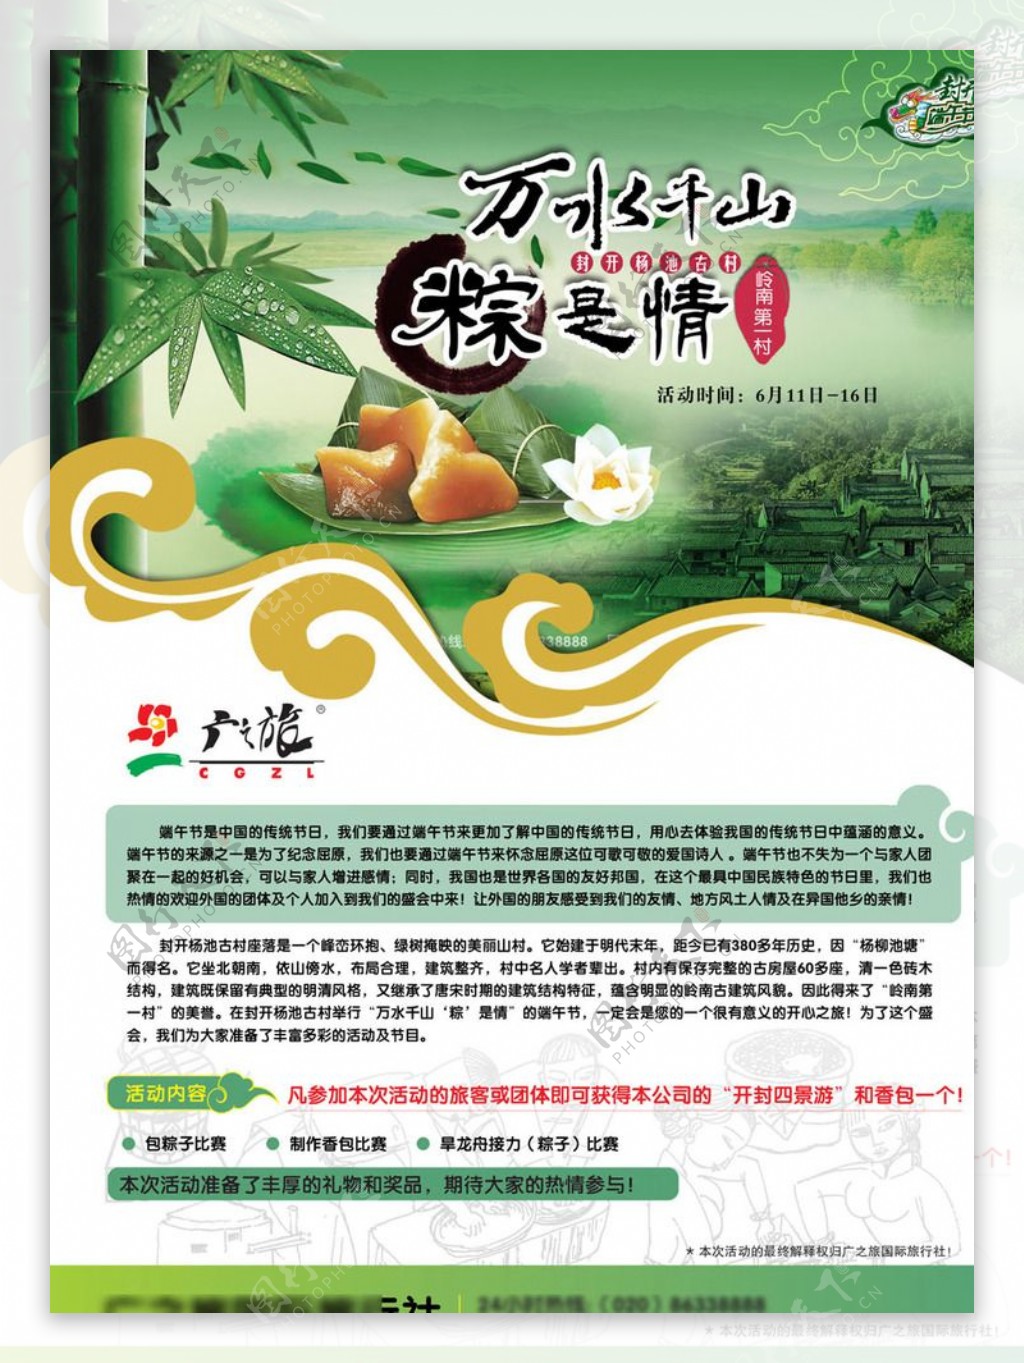 中国传统节日端午节活动海报